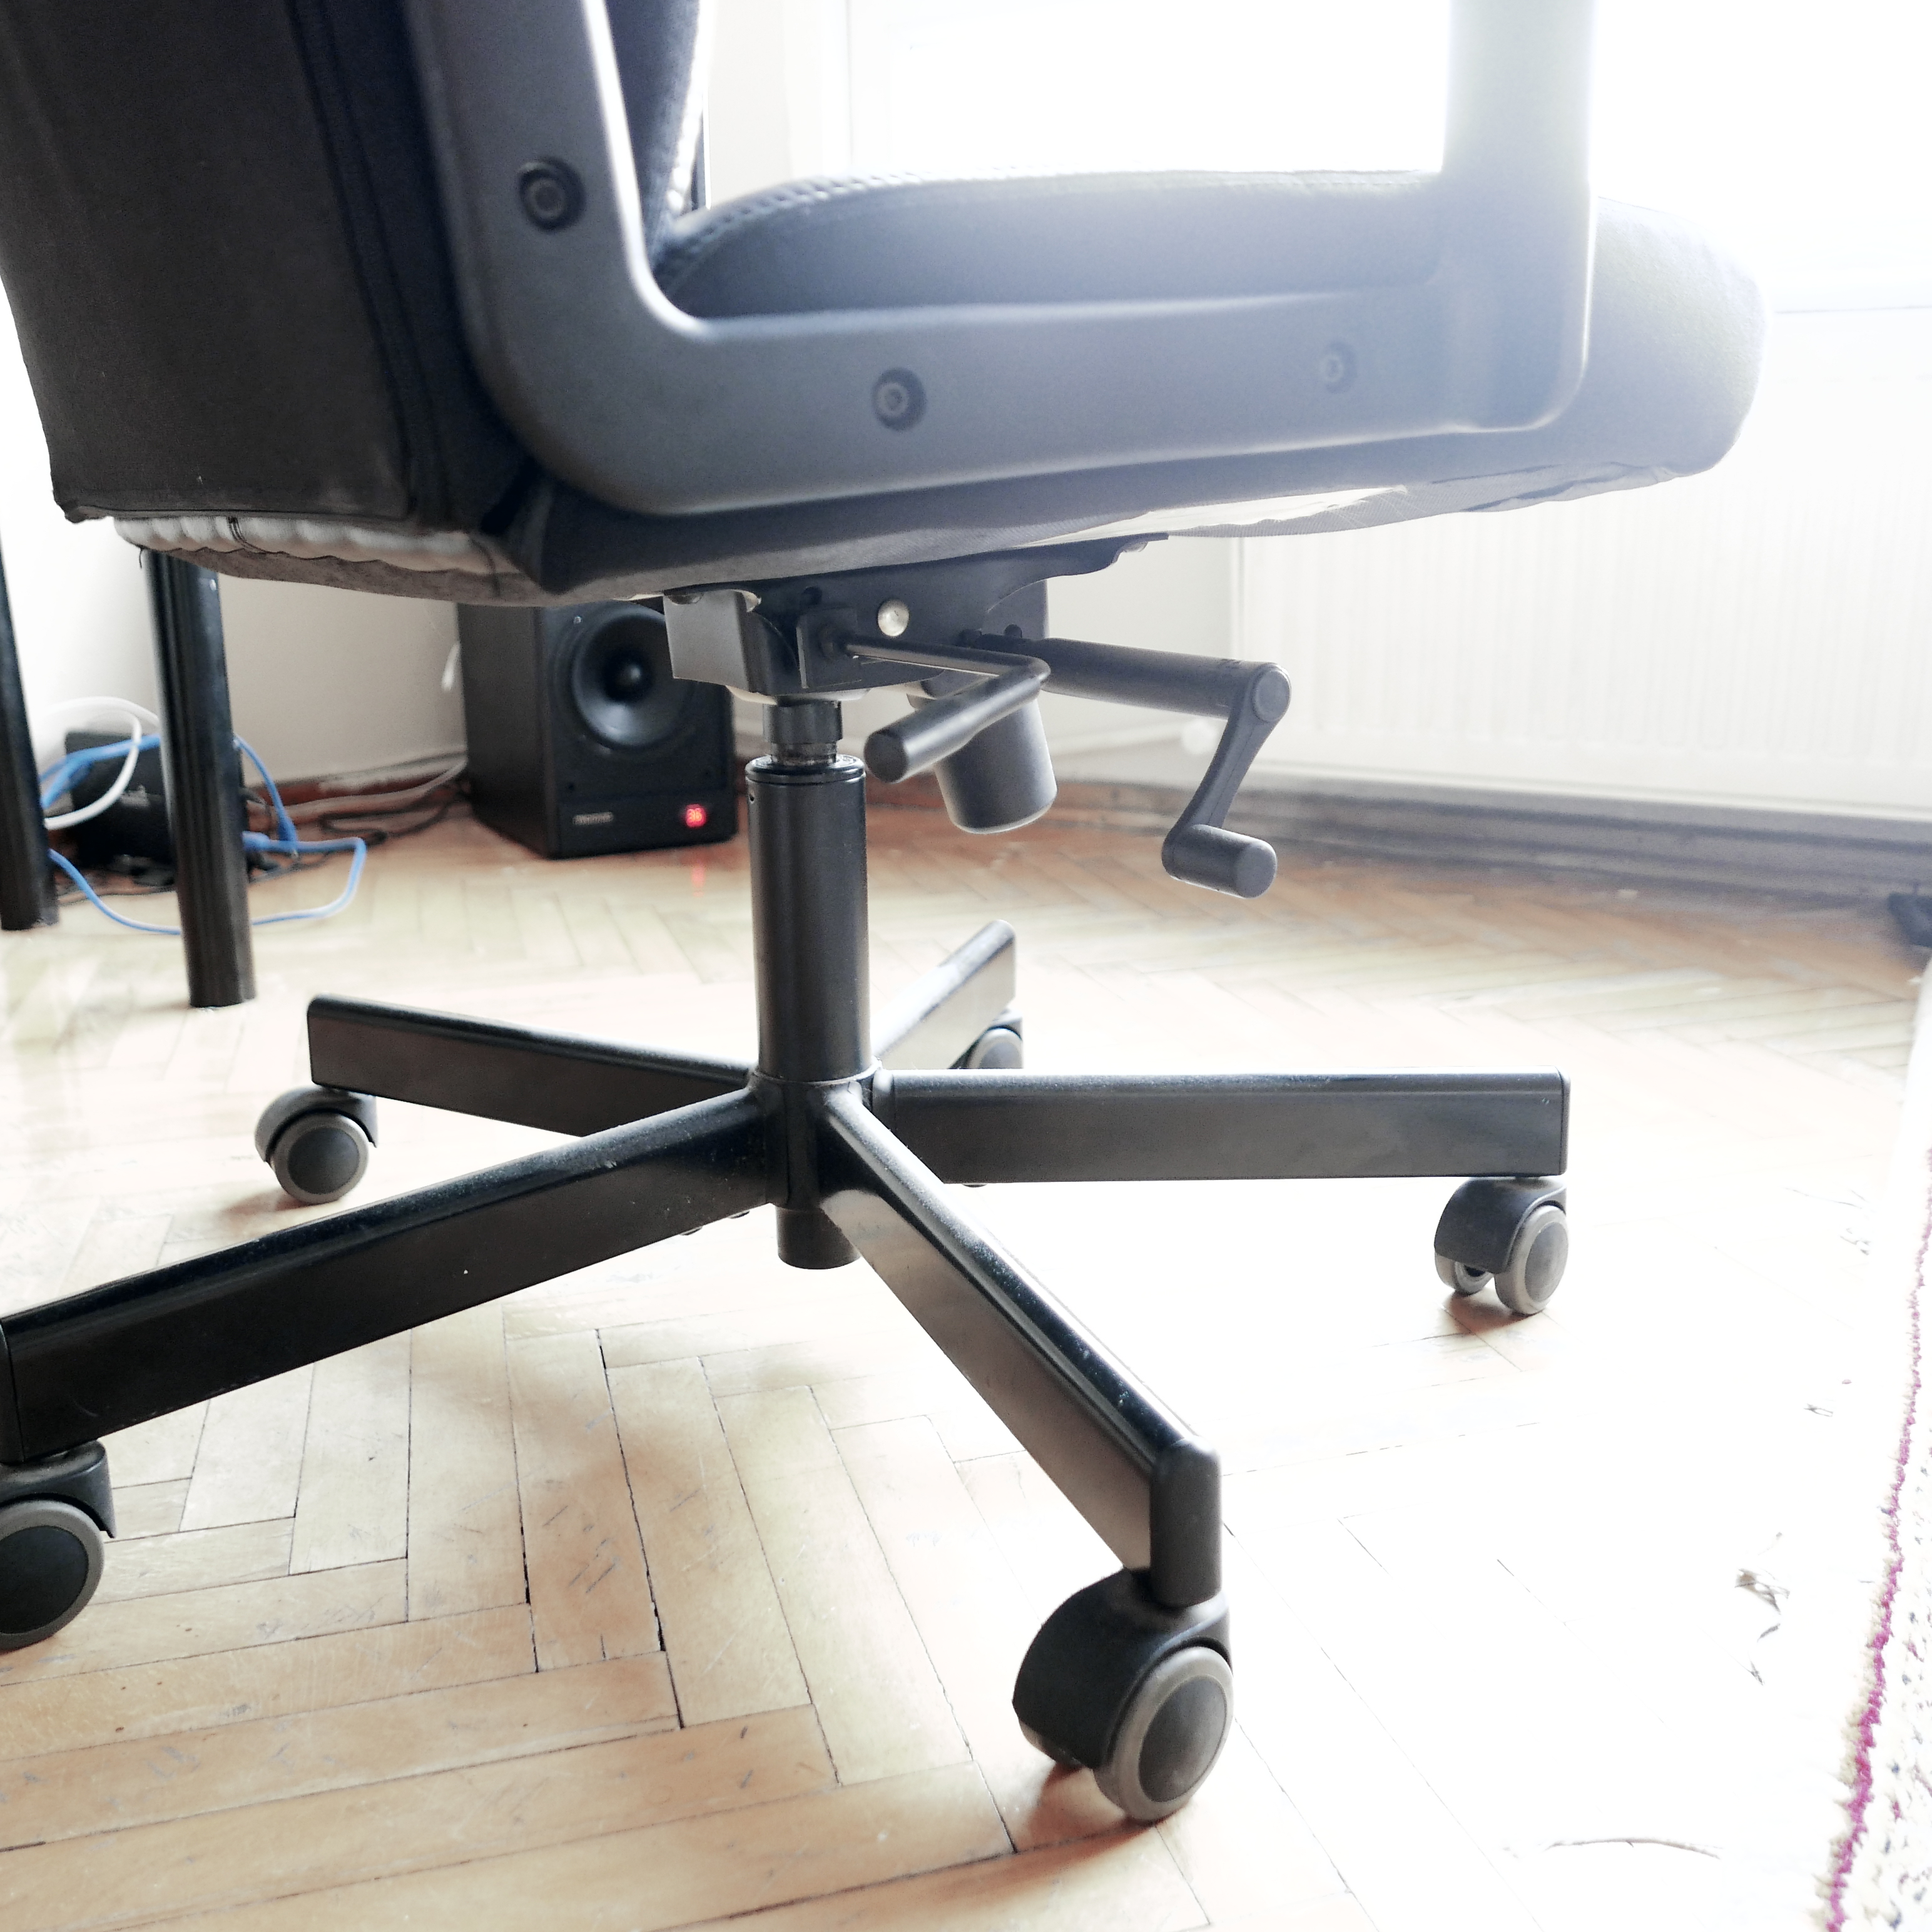 SATILDI] Ikea Malkolm Ofis Sandalyesi 150 TL [SATILDI] | DonanımHaber Forum